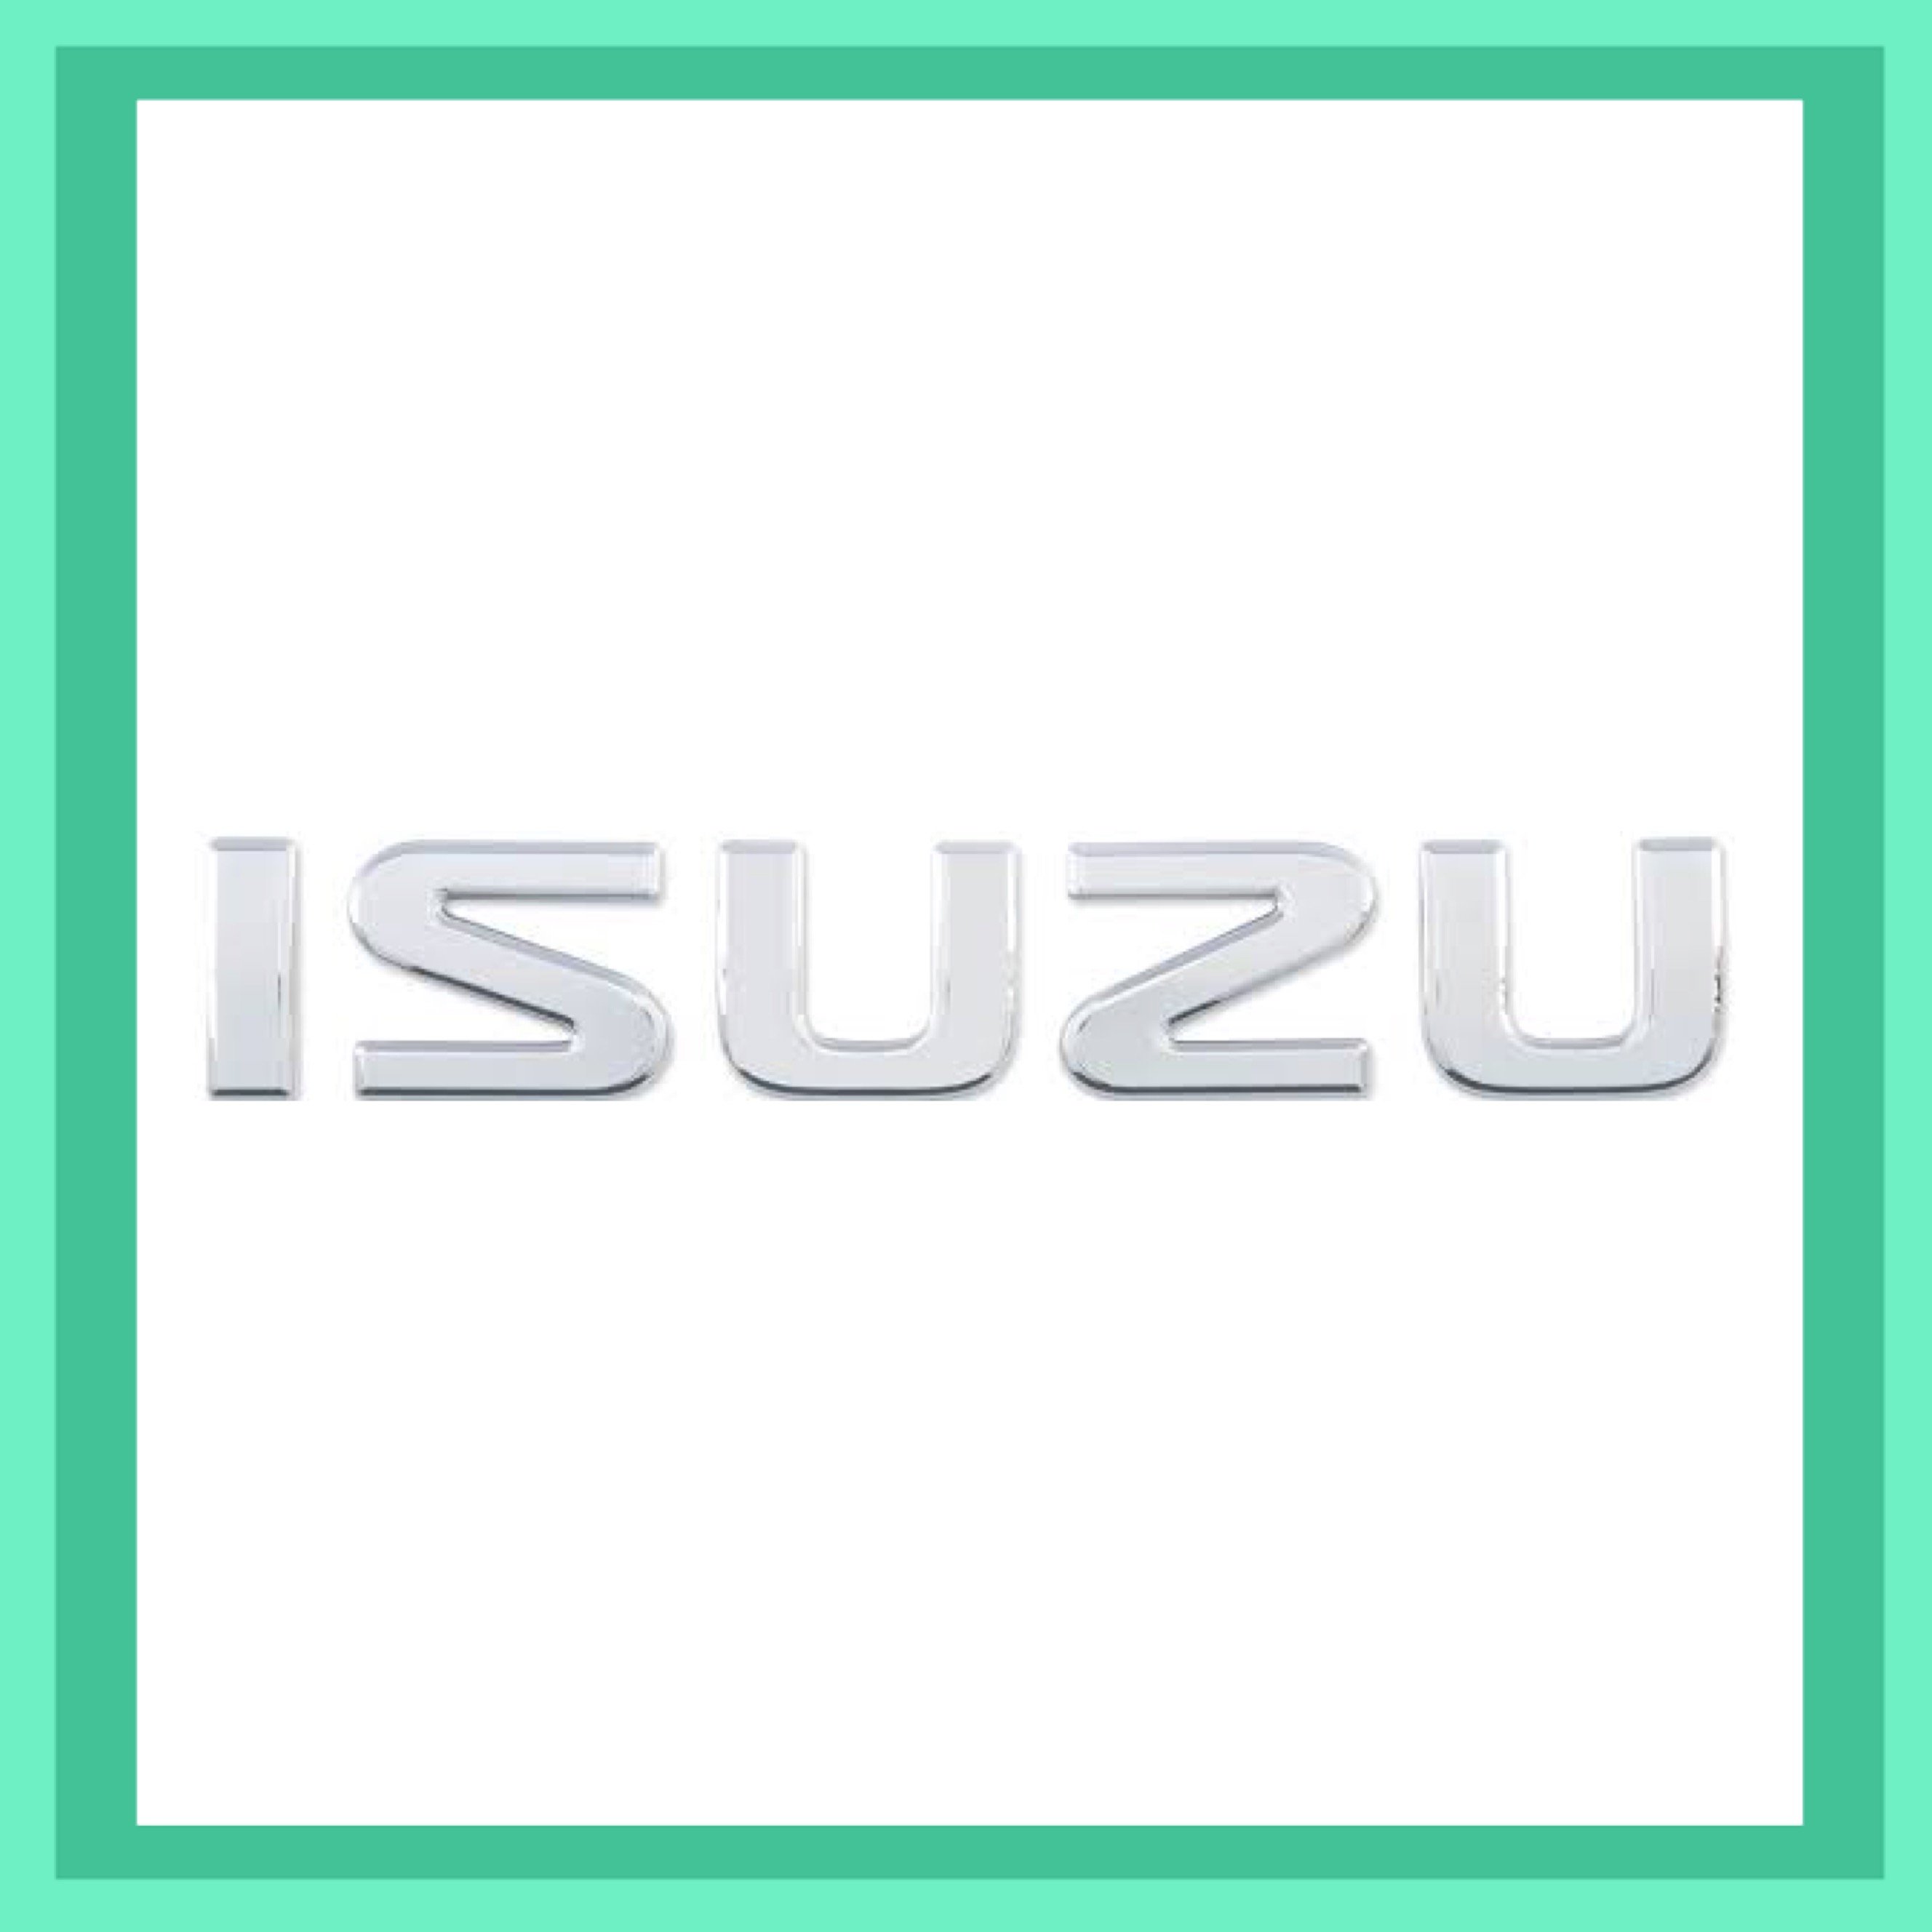 Isuzu D Max Car Key and Remote Series 1 2008-2012